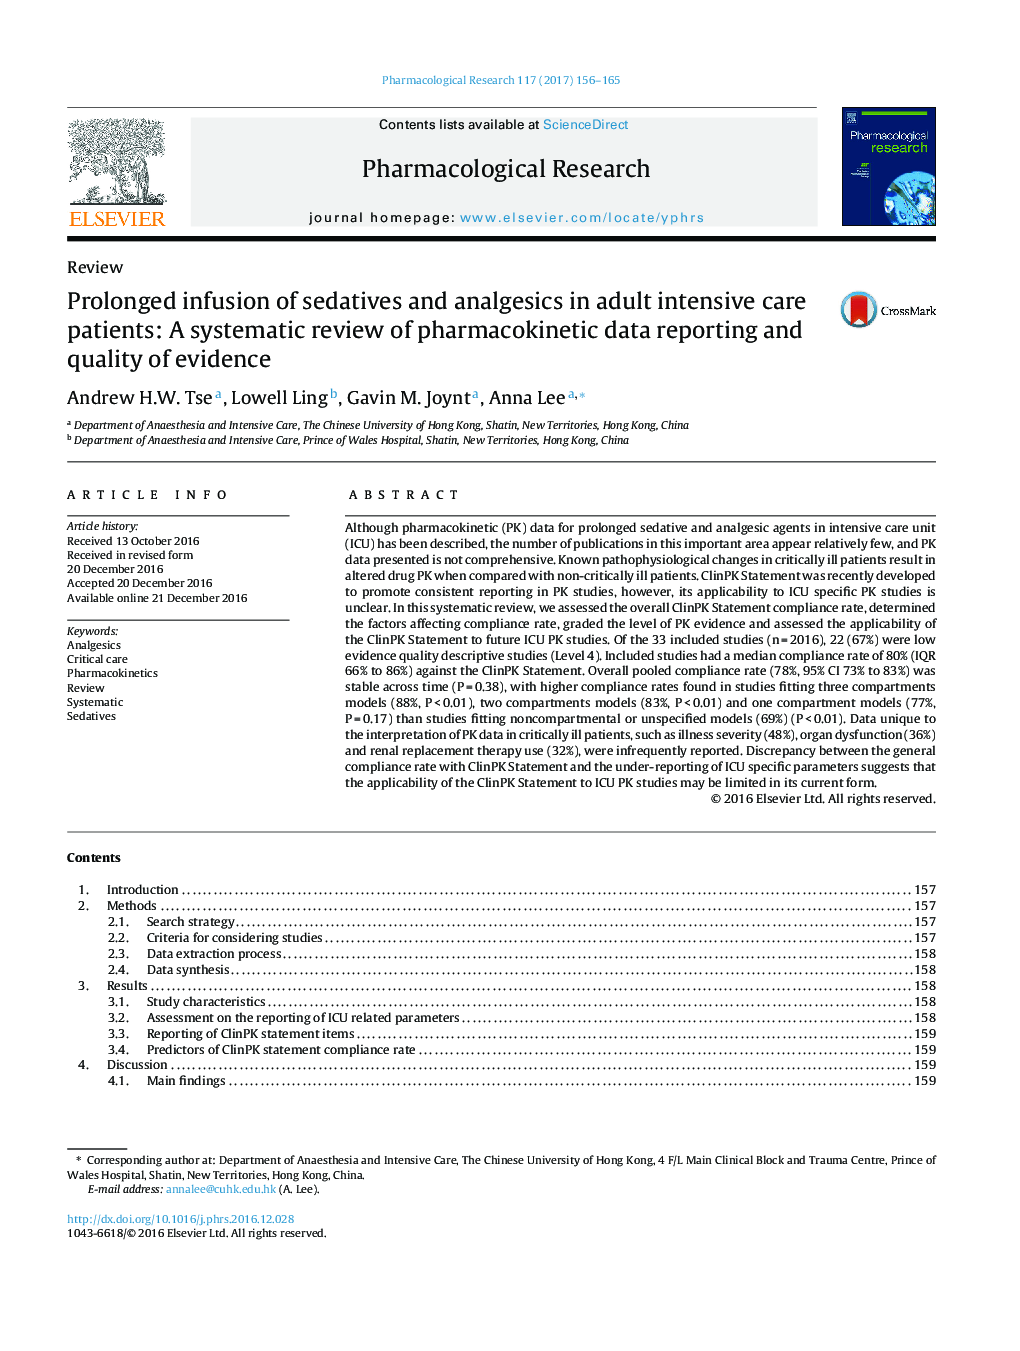 تزریق طولانی مدت آرام بخش و ضد درد در بیماران مبتلا به شدید مراقبت های ویژه: بررسی سیستماتیک گزارش داده های فارماکوکینتیک و کیفیت شواهد 